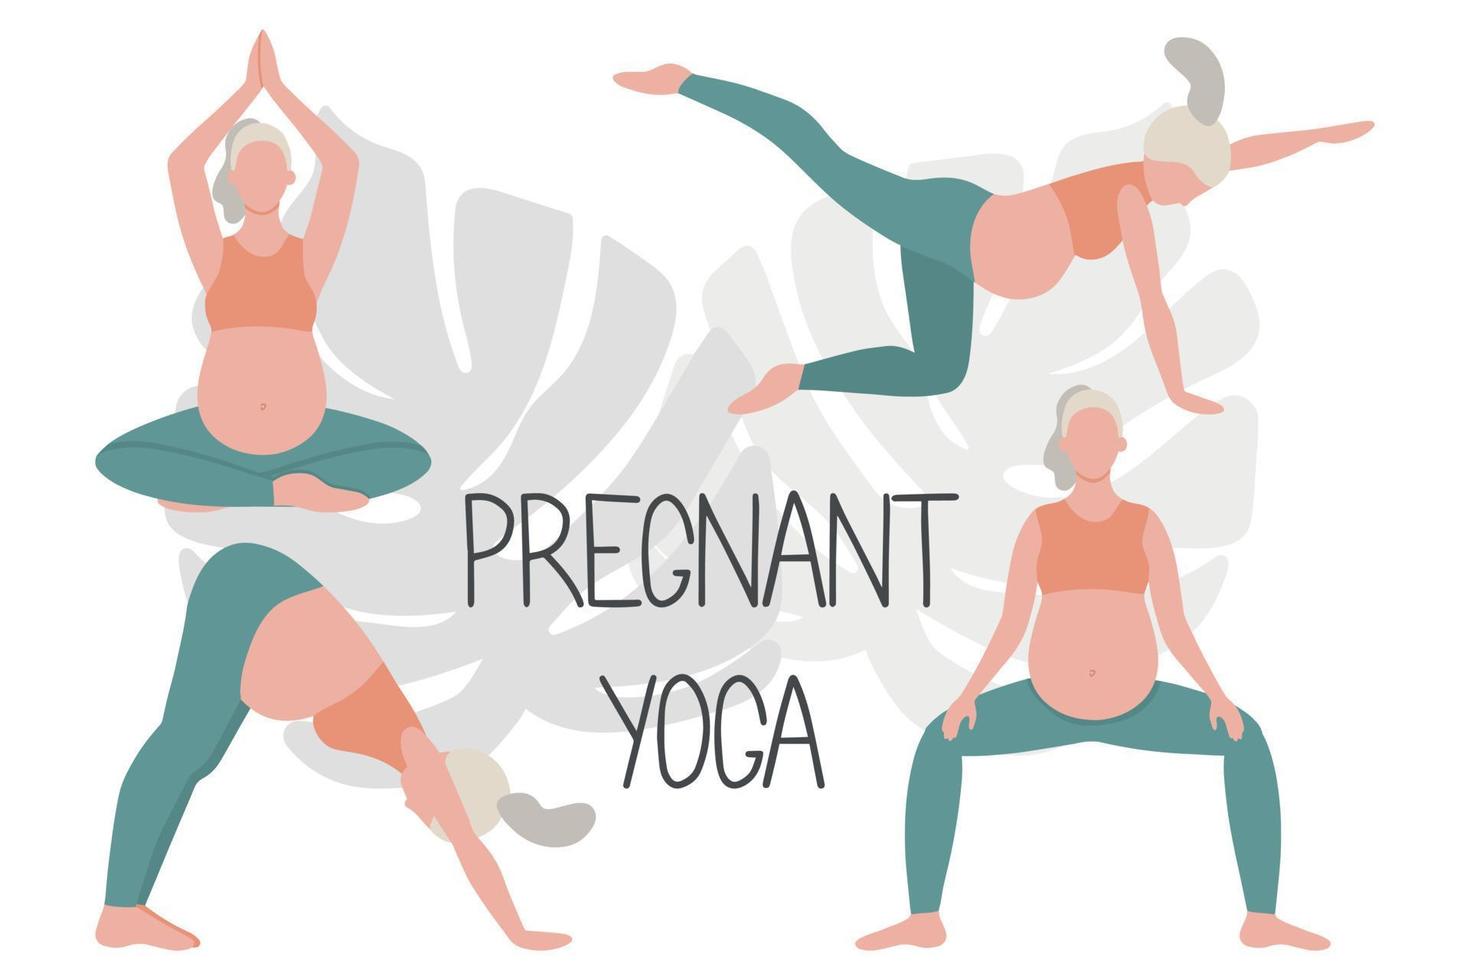 concept de grossesse heureuse et saine. femme enceinte faisant du yoga, 4 exercices pour la santé et la relaxation. vecteur